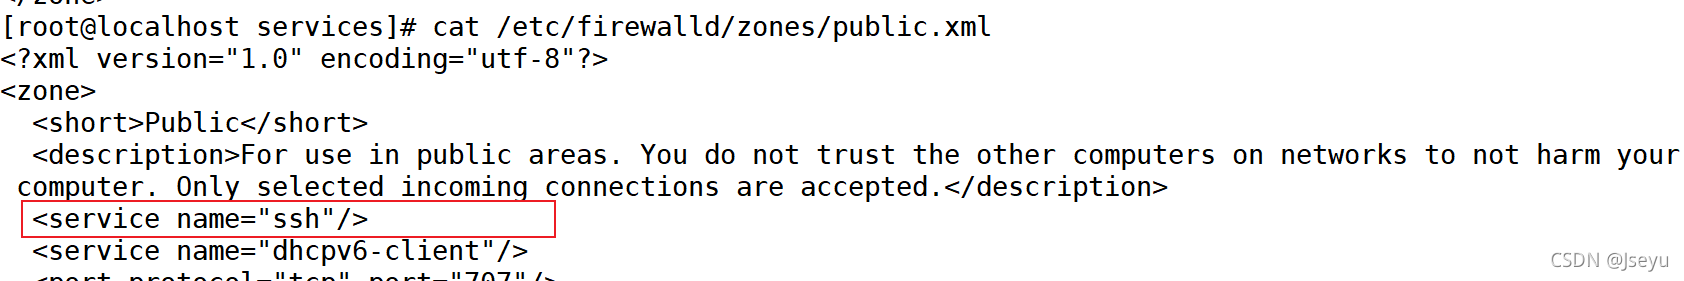 如上图，ssh服务已经开放，开启firewalld时不会影响